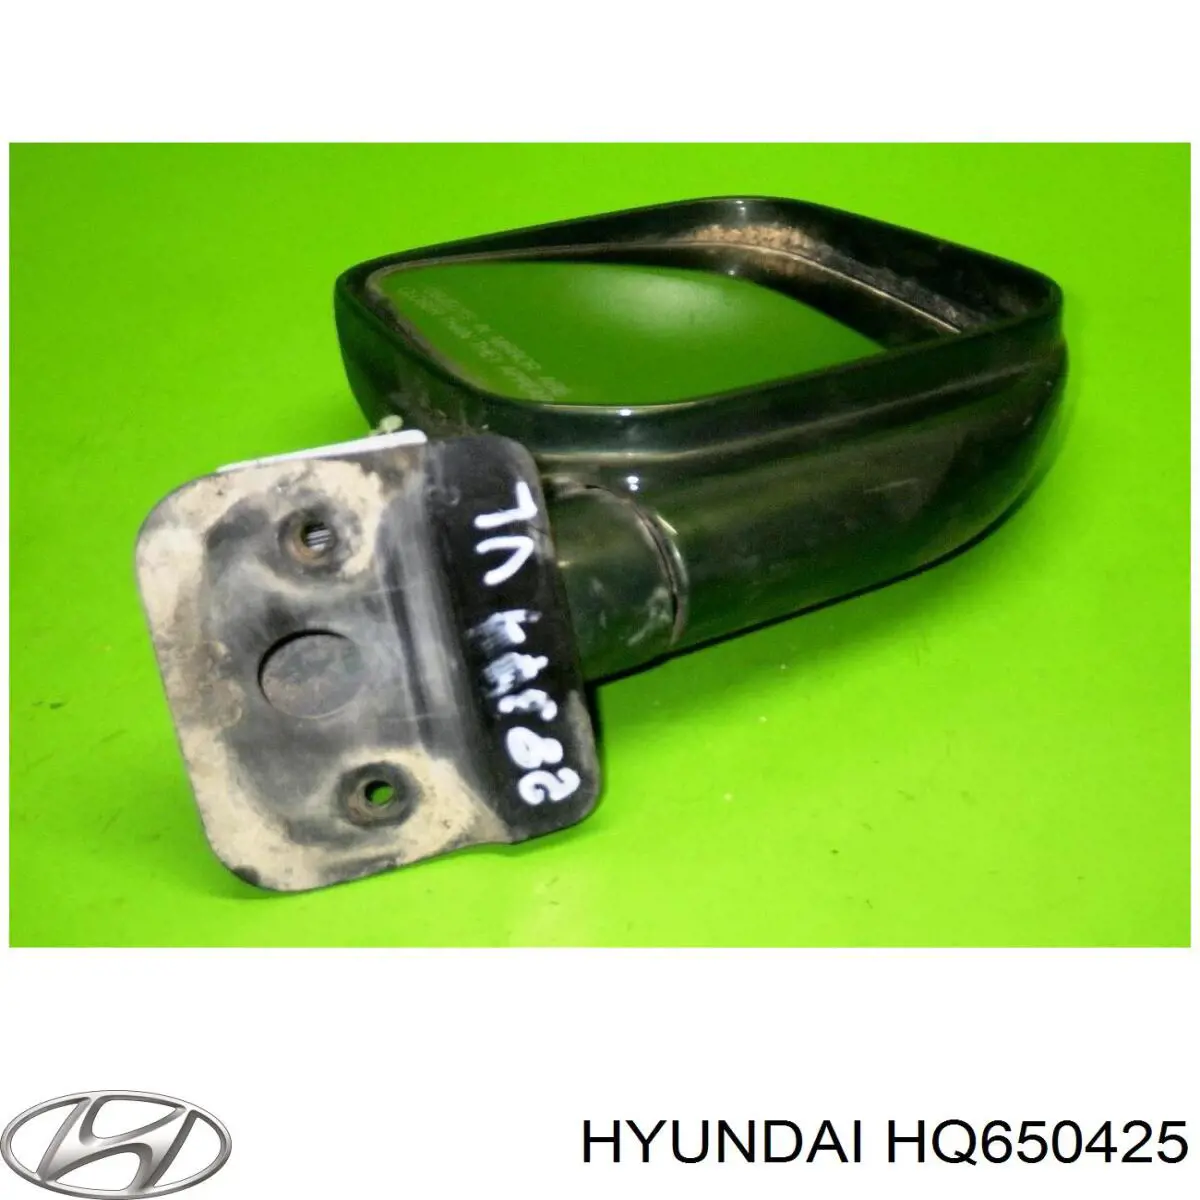 HQ650425 Hyundai/Kia espejo retrovisor izquierdo